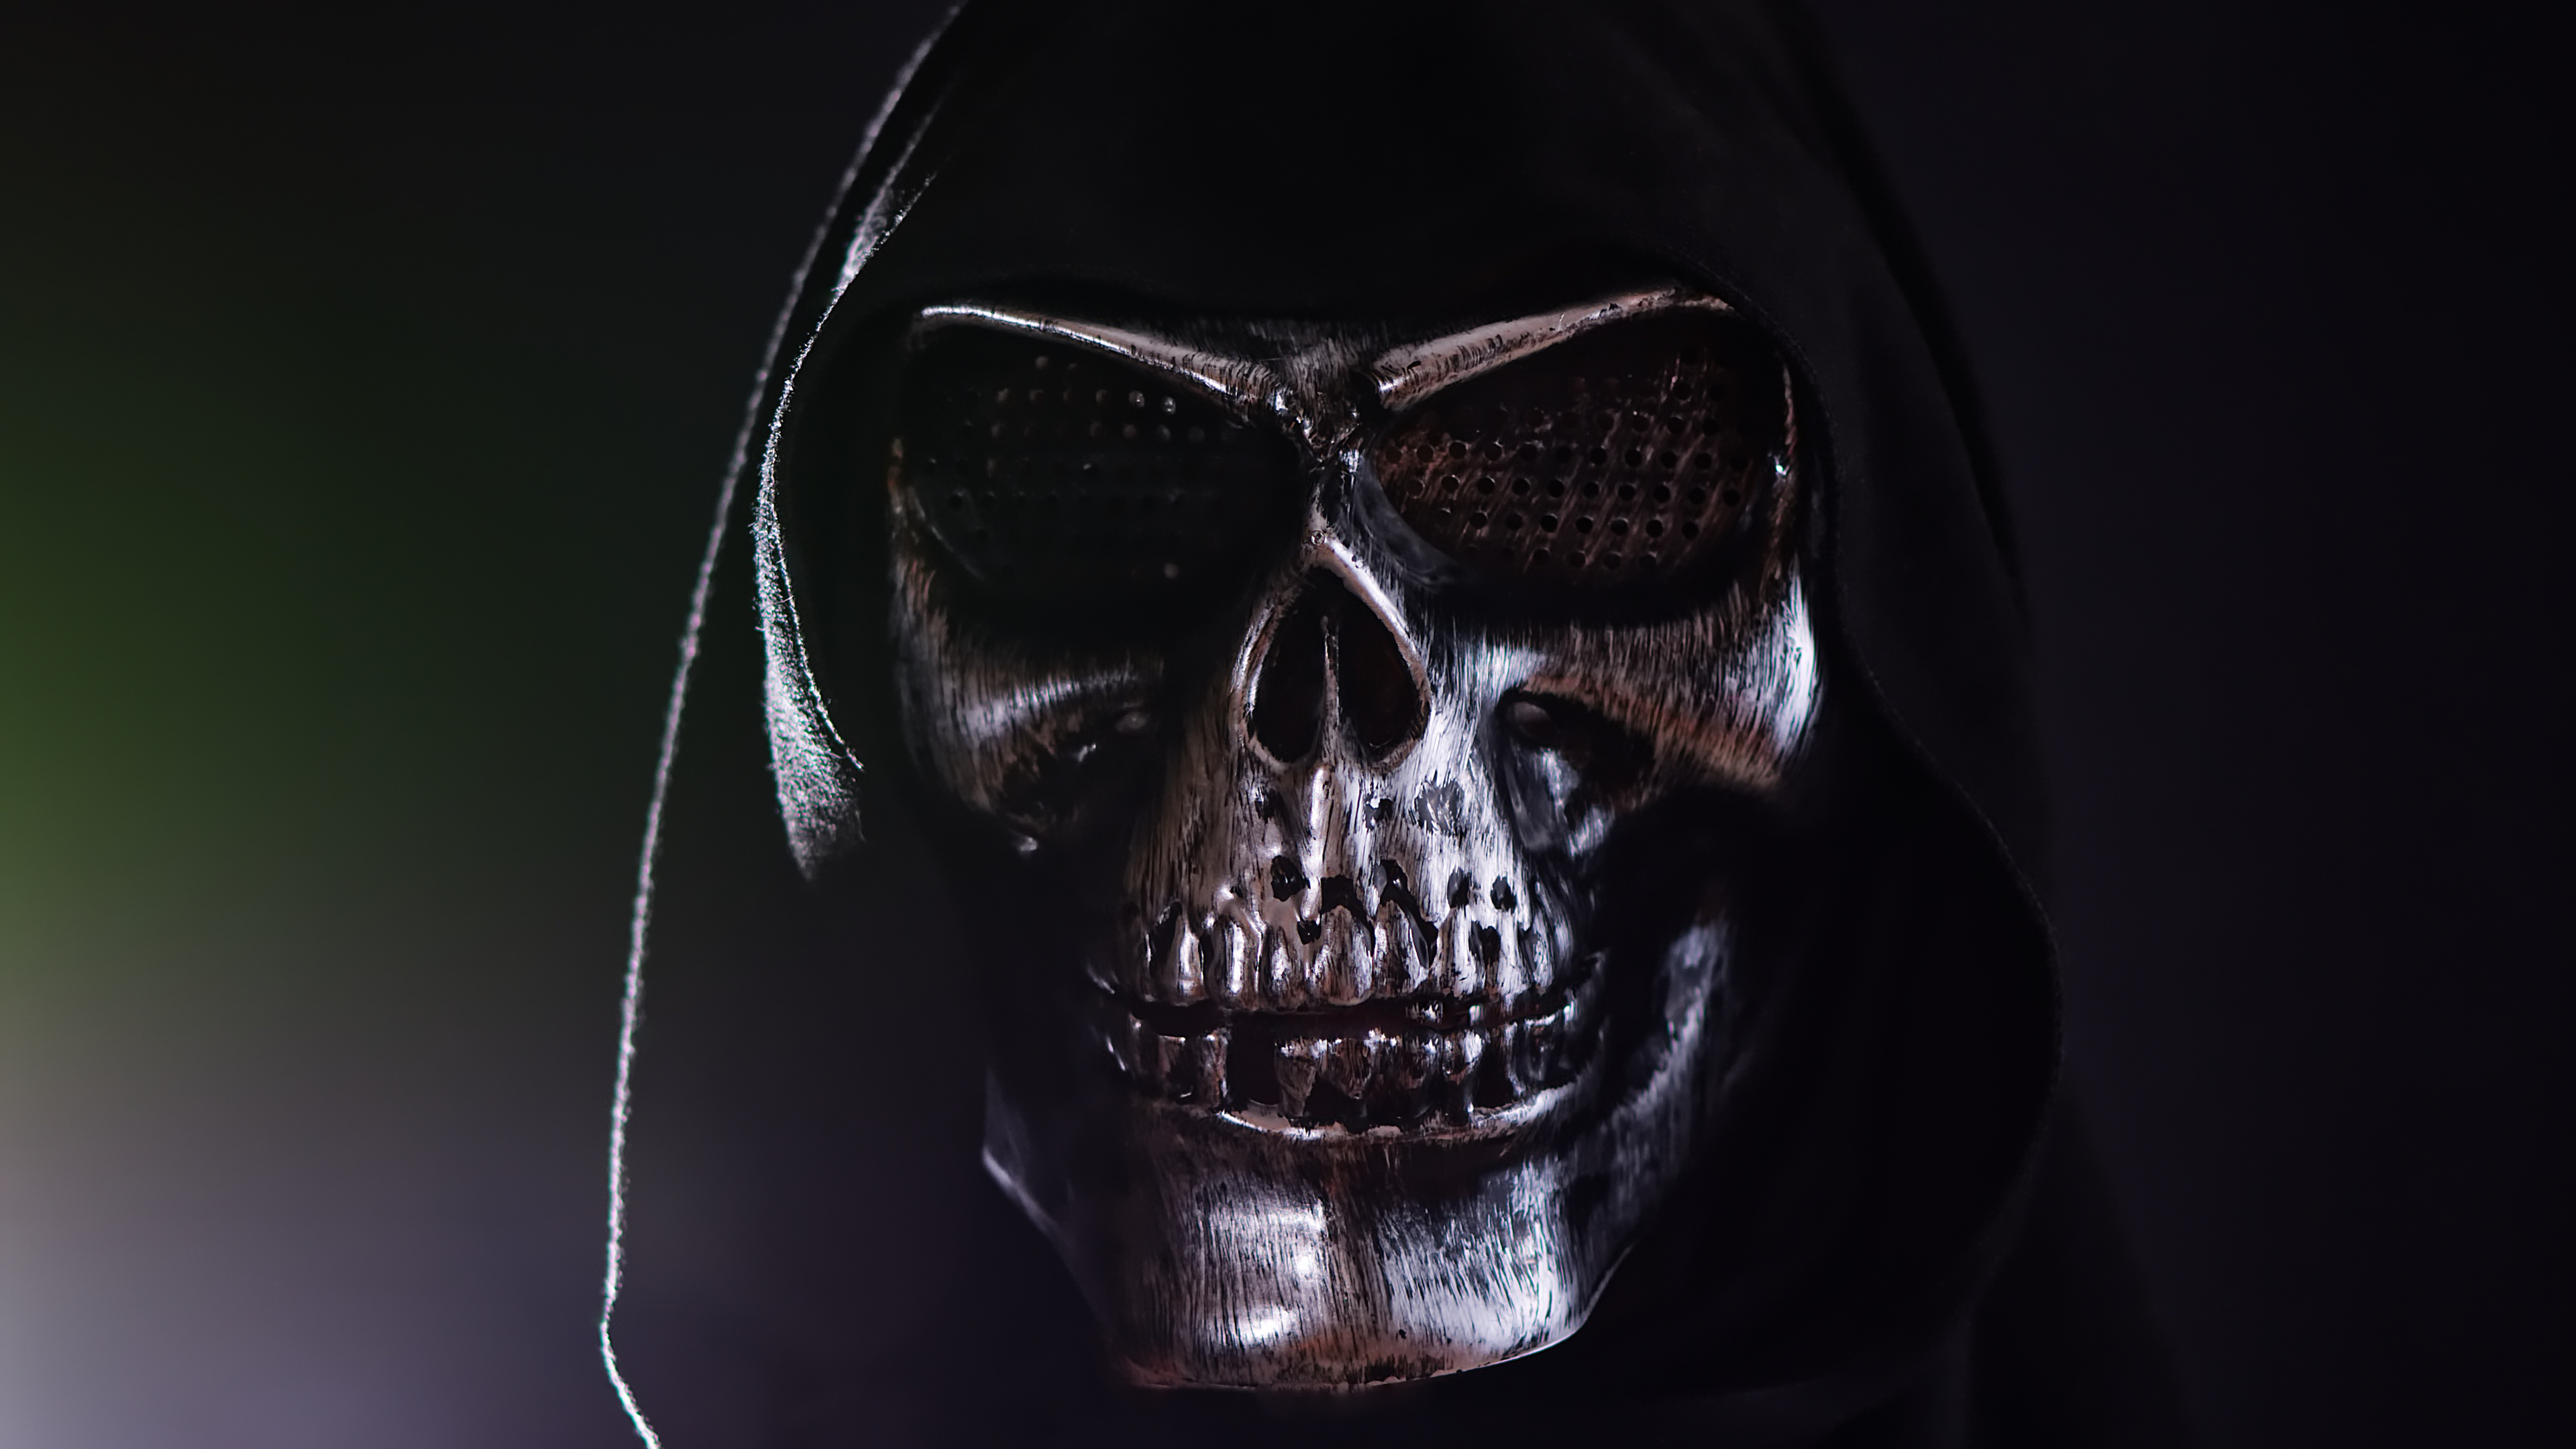 Masque de Crâne Noir et Argent. Wallpaper in 3840x2160 Resolution